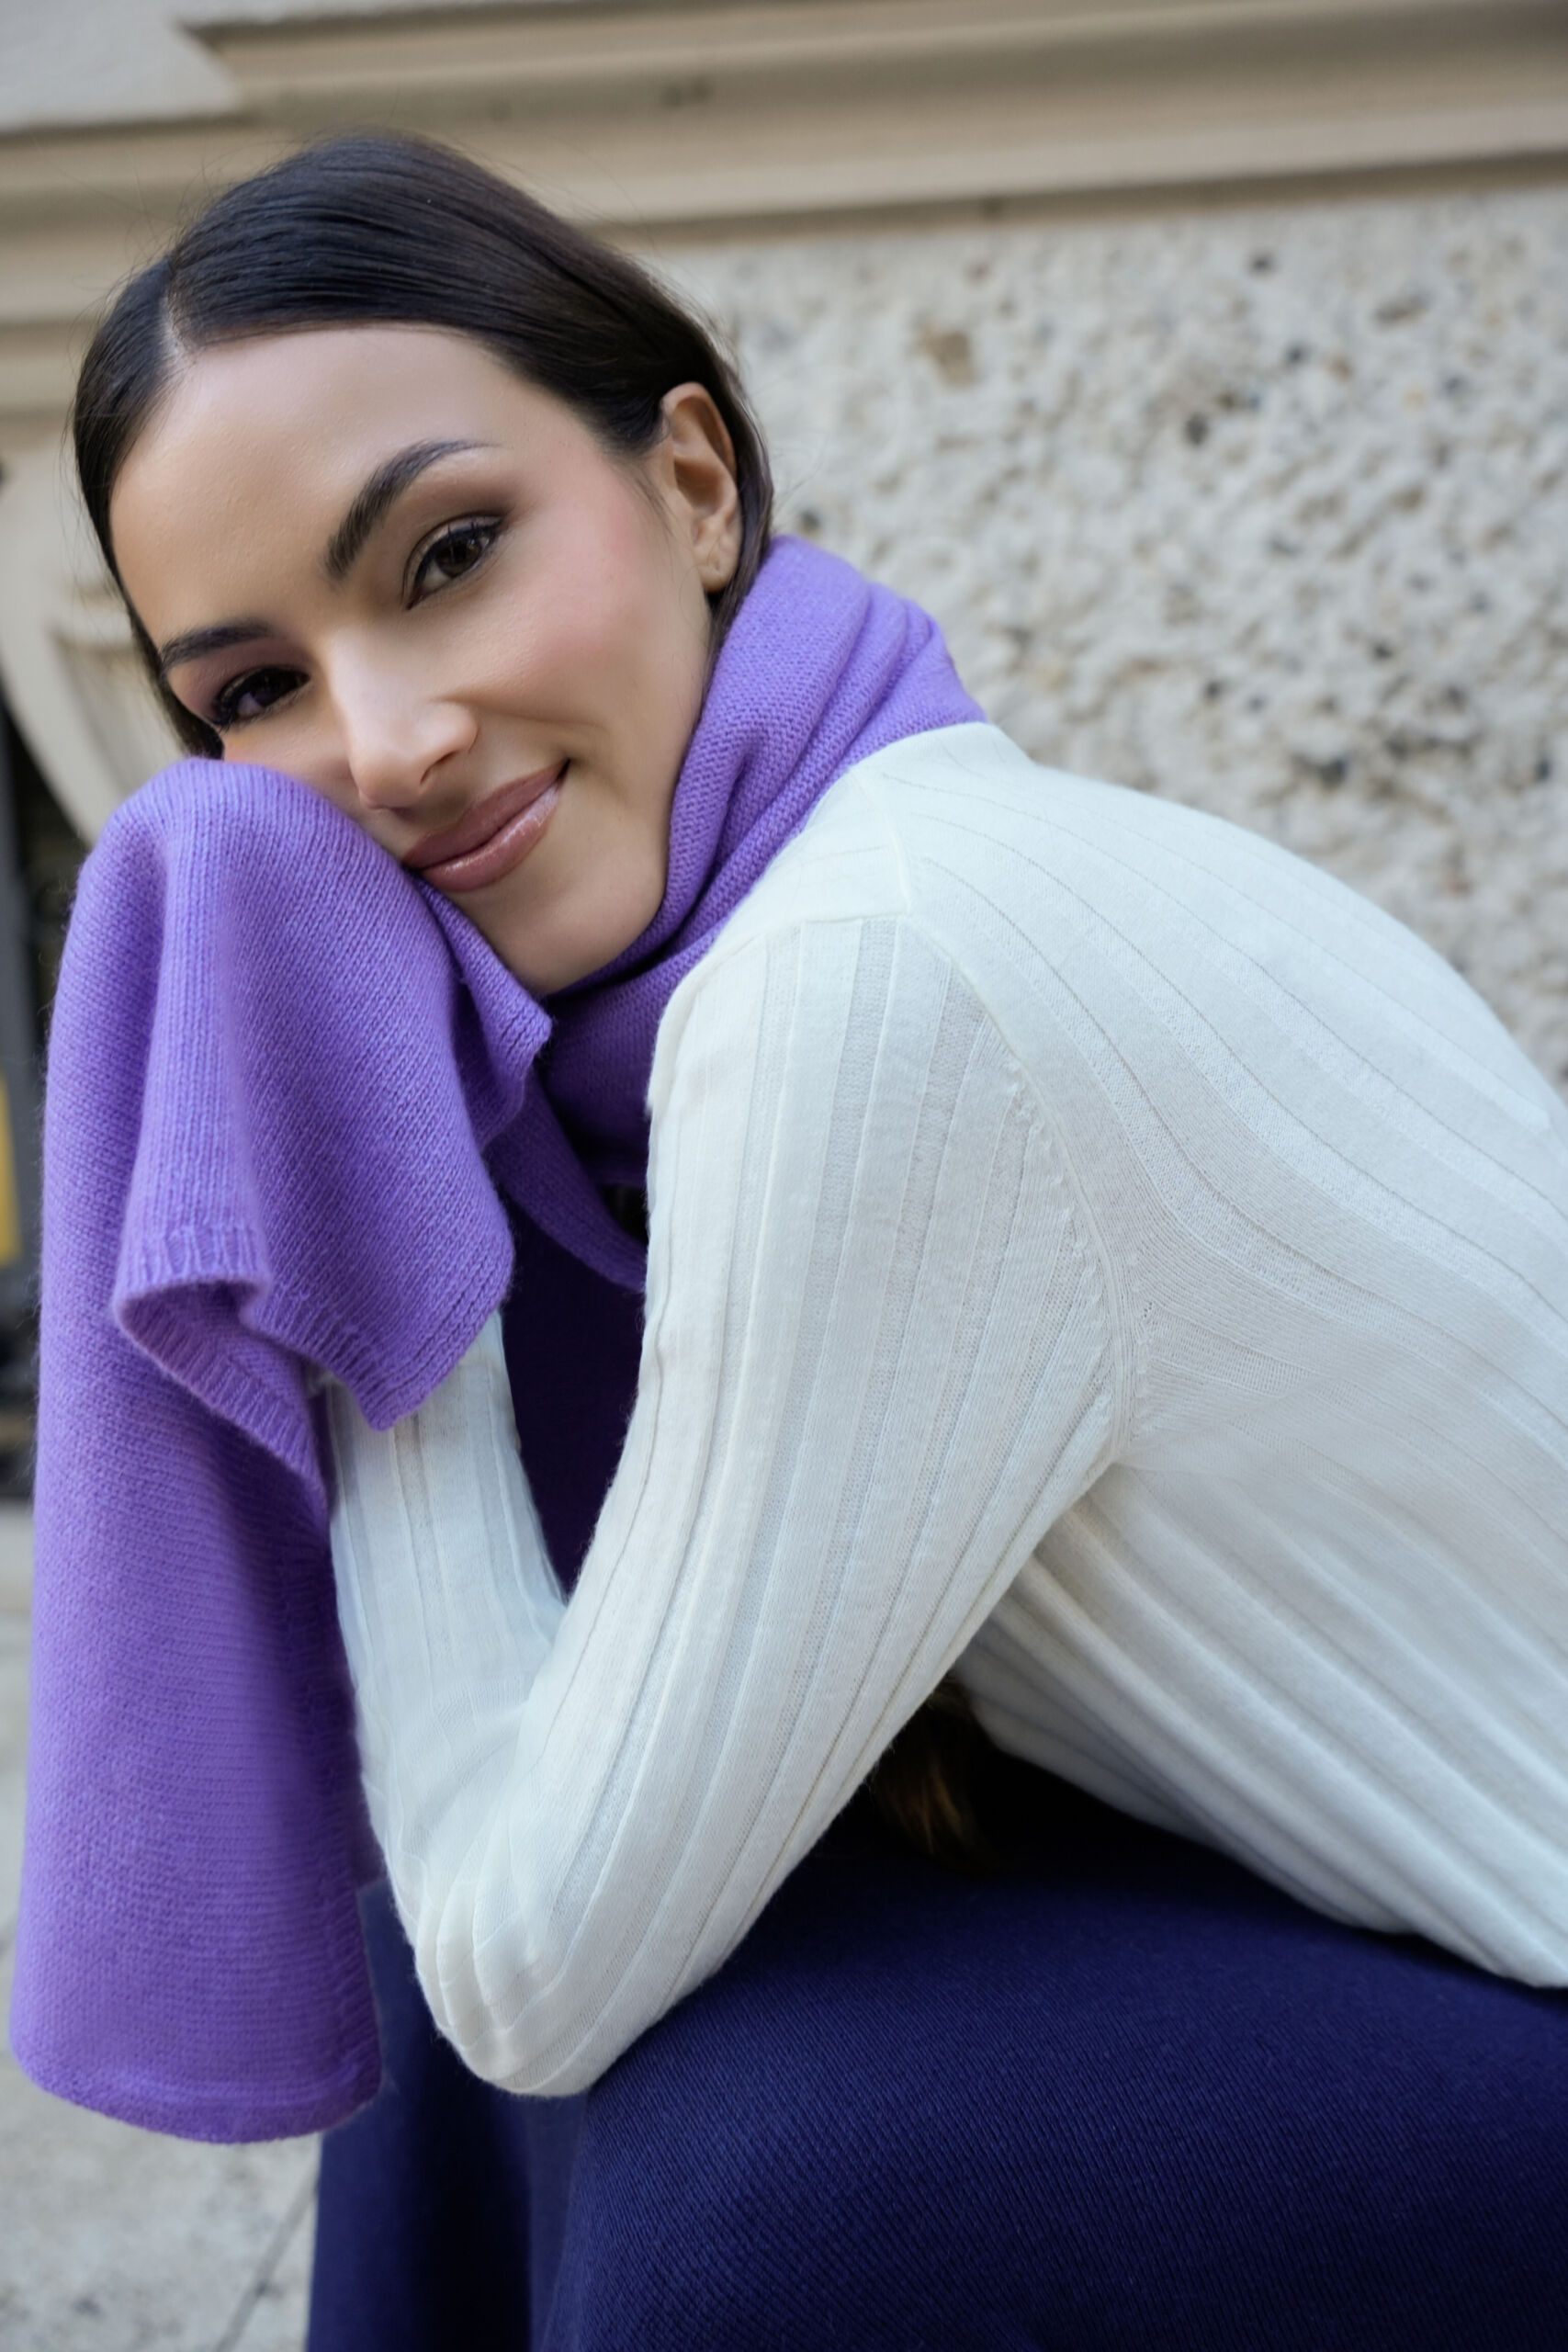 Trieste Lav 2 scaled 1stAmerican sciarpa da donna misto cashmere misura 45 x 215 - sciarpa invernale in misto cashmere 100% Made in Italy